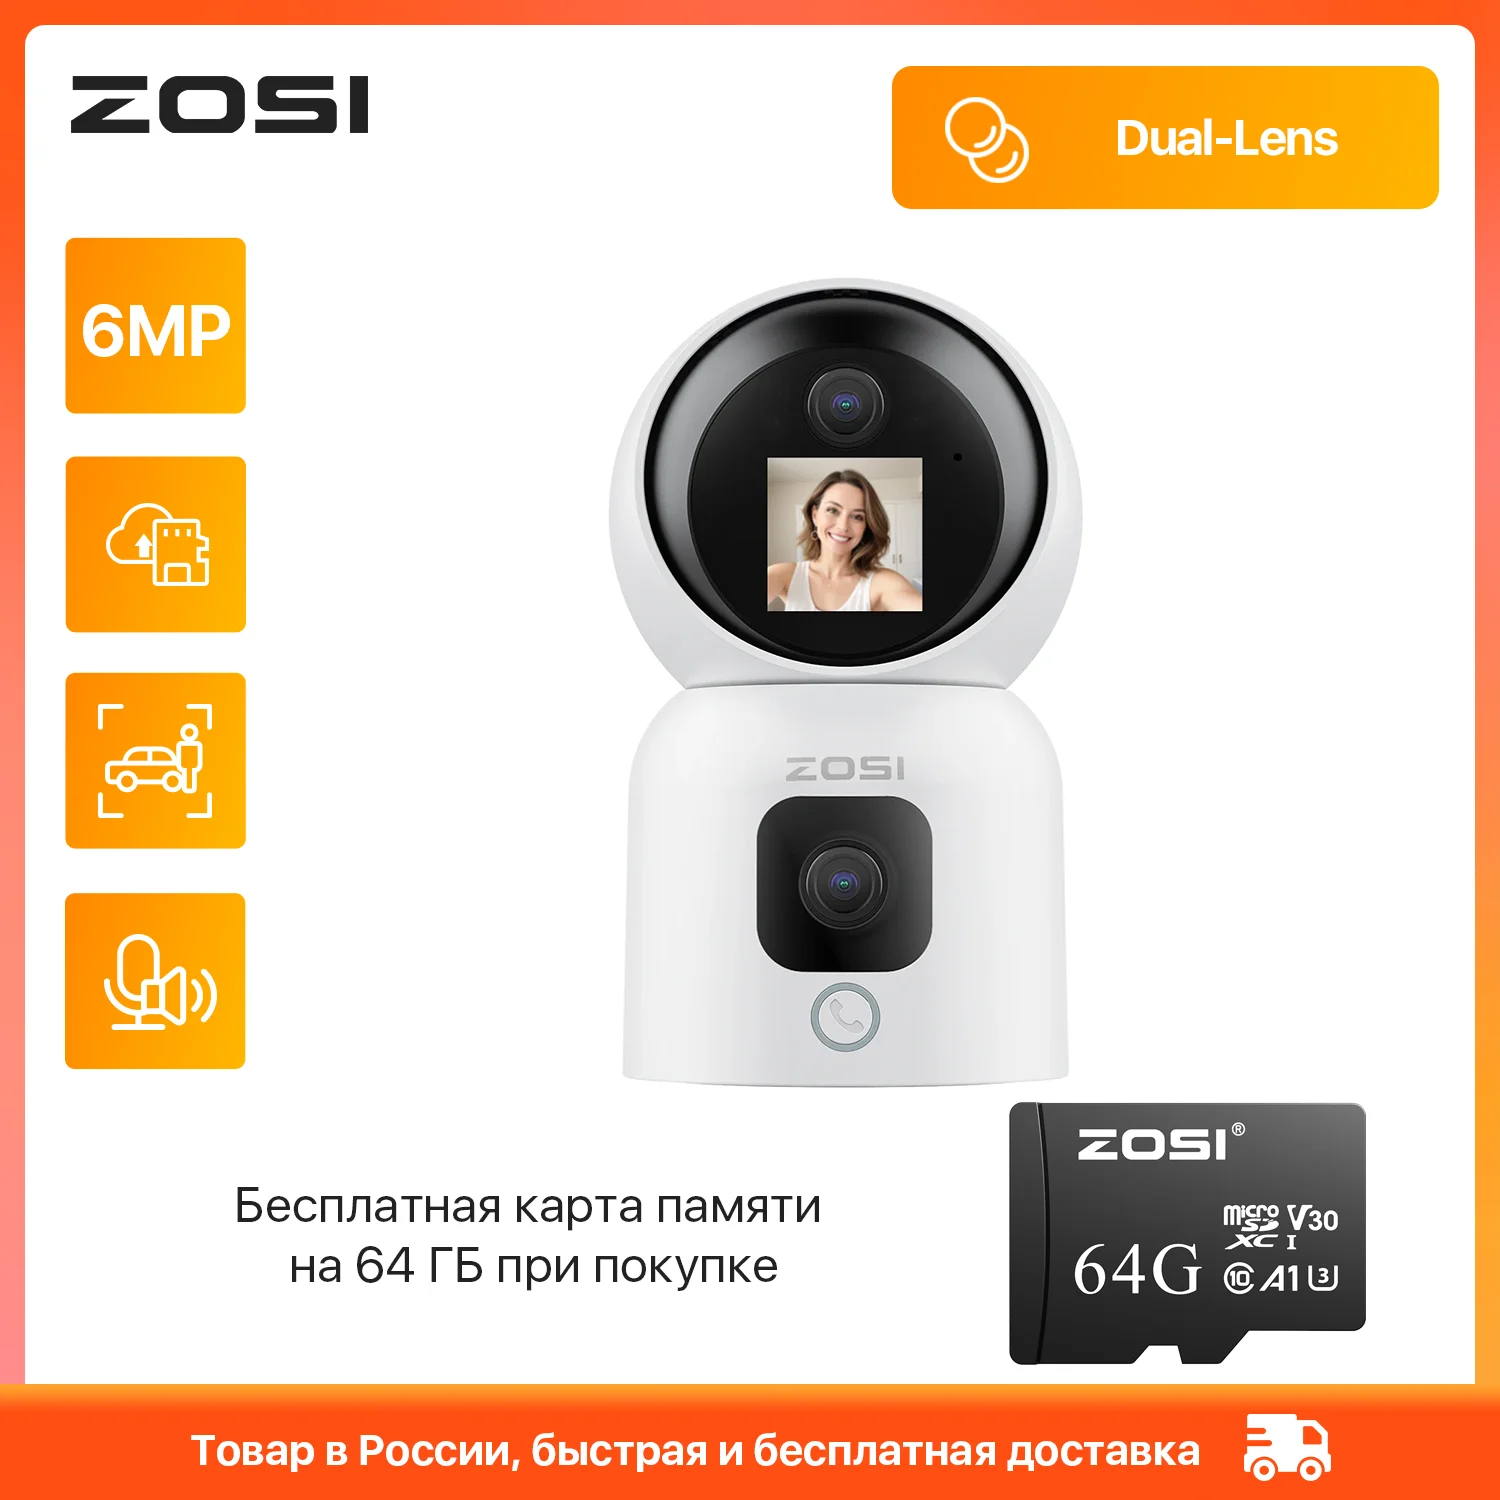 ZOSI C528M HD 실내 와이파이 CCTV 카메라 – 듀얼 렌즈, 영상 통화 기능, 자동 추적 지원, 무선 IP 보안 카메라 (6MP)